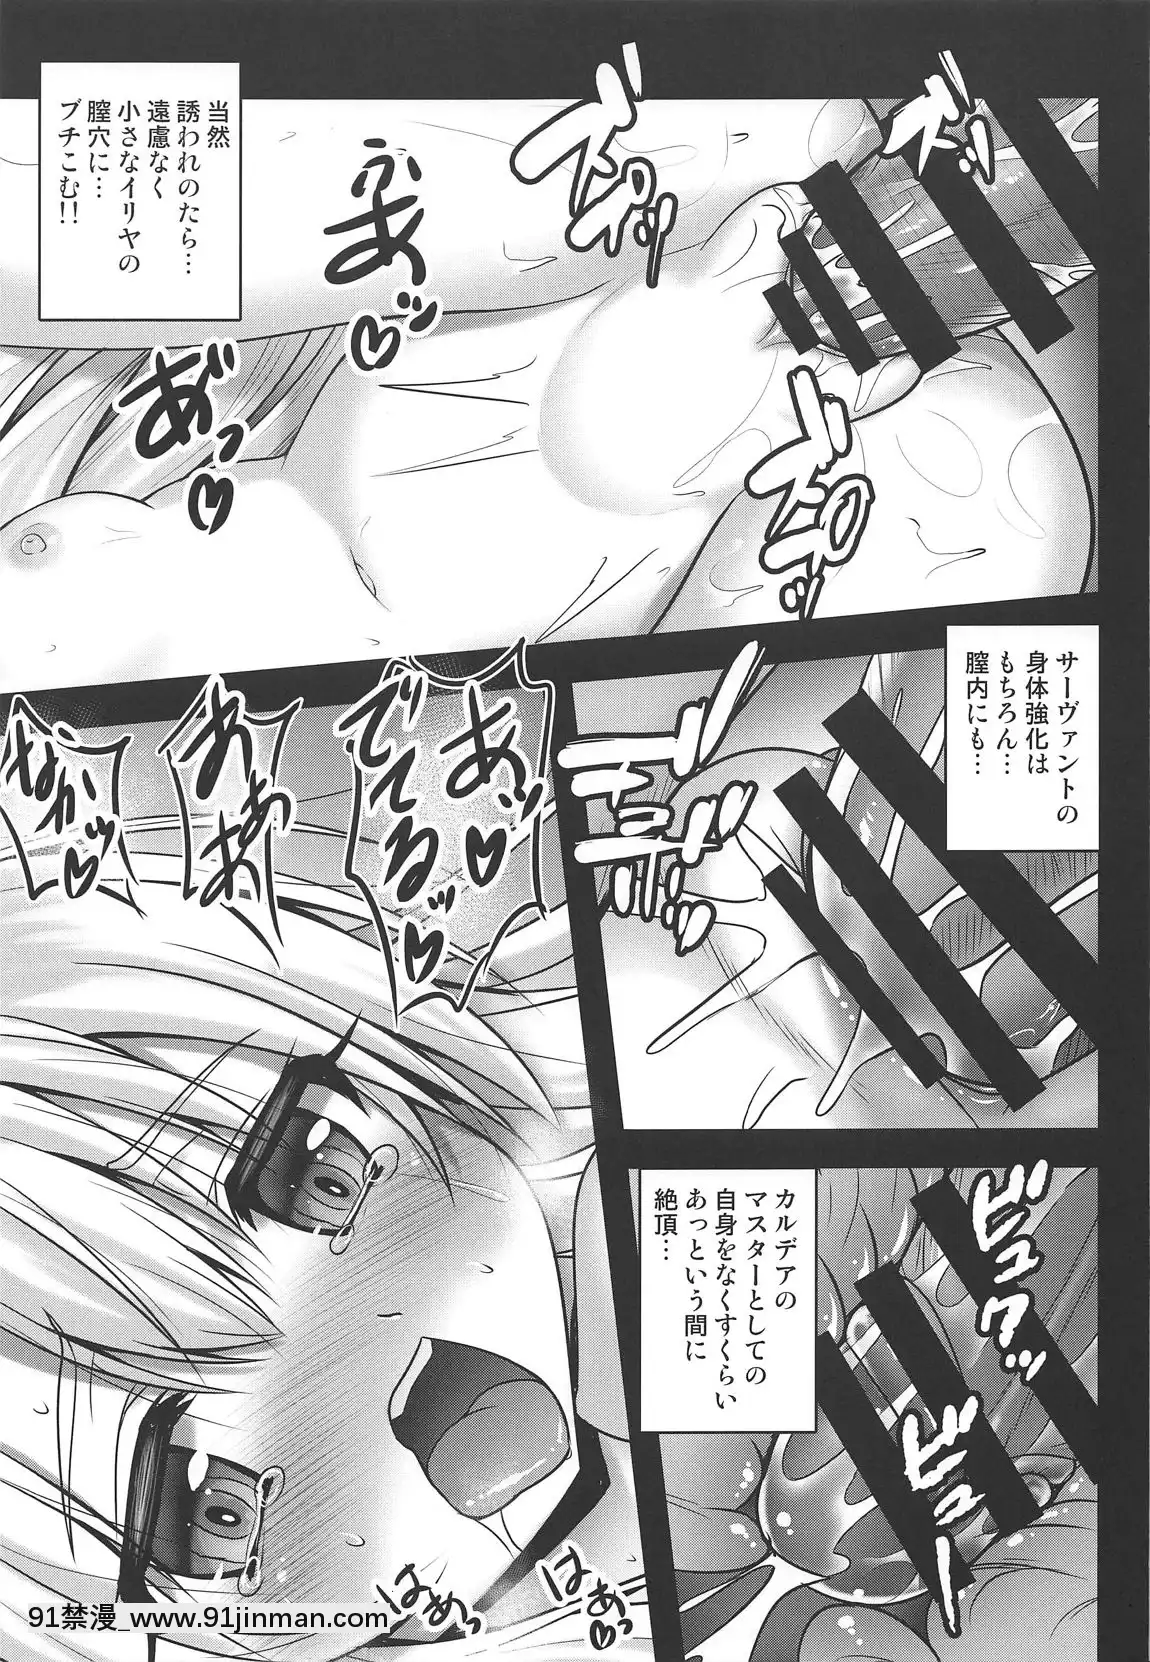 (COMIC1 ☆ 15)   [SHINING  (Shaian)]   Illya sẽ bóc lột tình dục bạn với khuôn mặt toro ♥   (FateGrand Order)【cung âu và tiểu niệm truyện tranh】